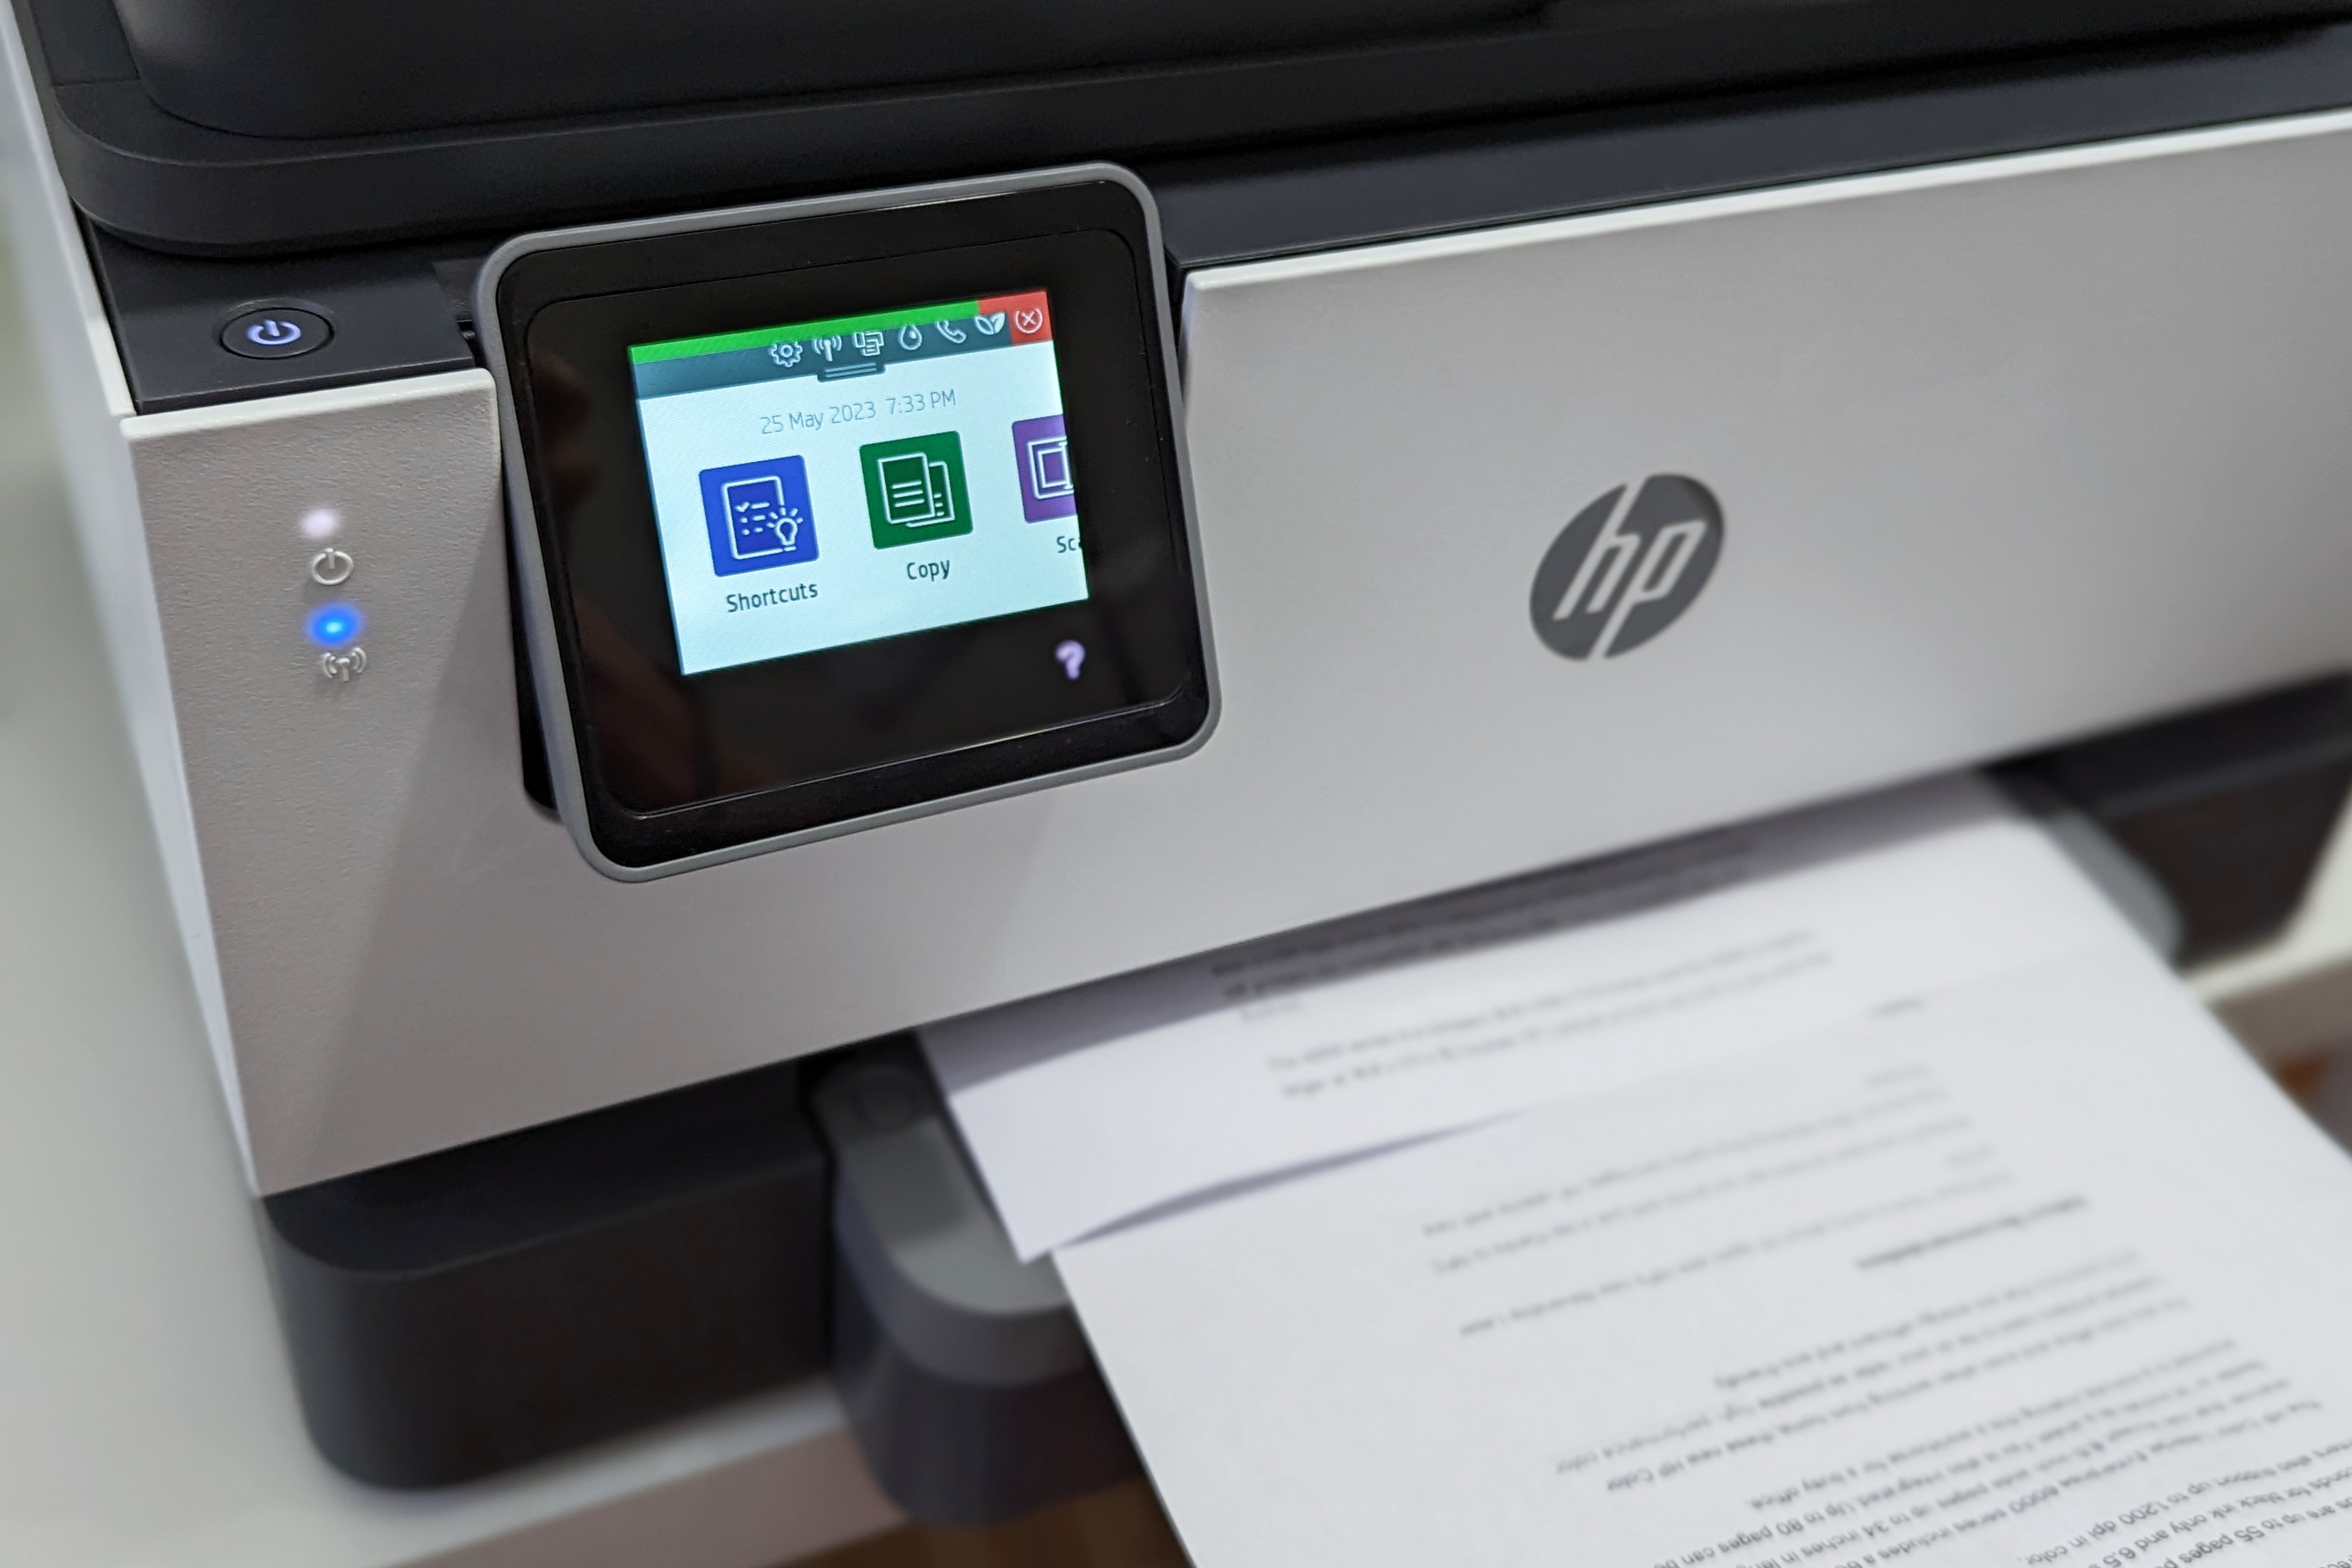 Über den Touchscreen können Kopien direkt vom HP OfficeJet Pro 9015e aus erstellt werden.